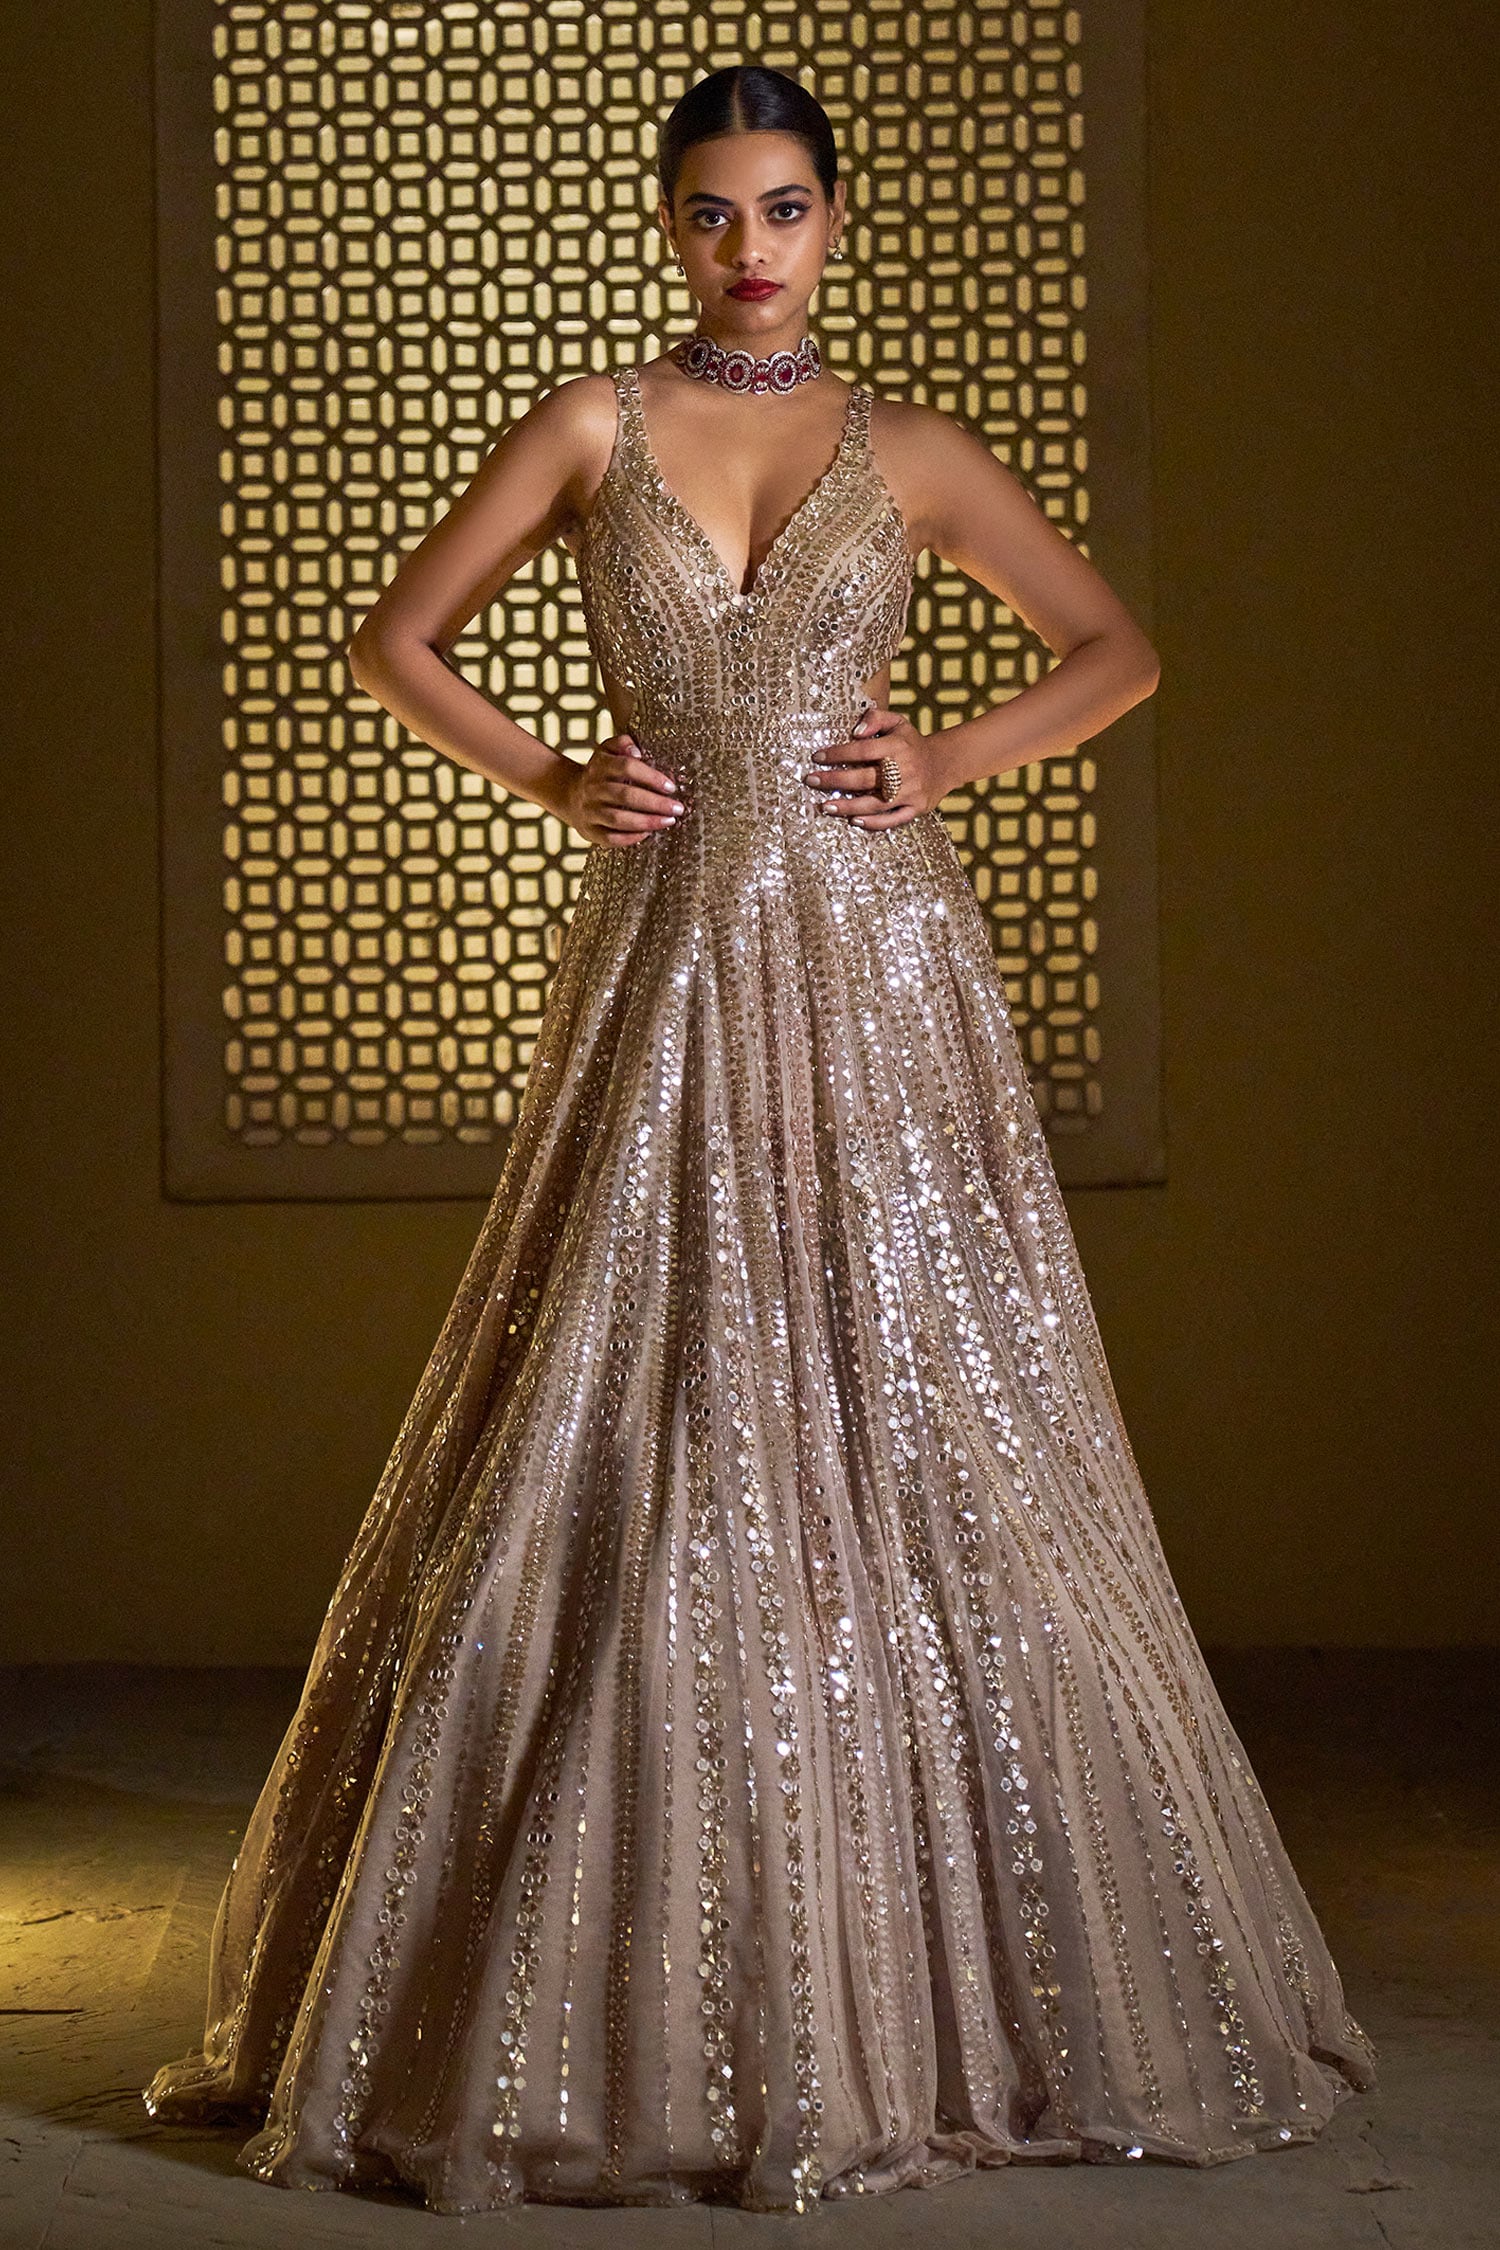 Kate Middleton's gold dress: Jenny Packham Goldfinger sequin gown